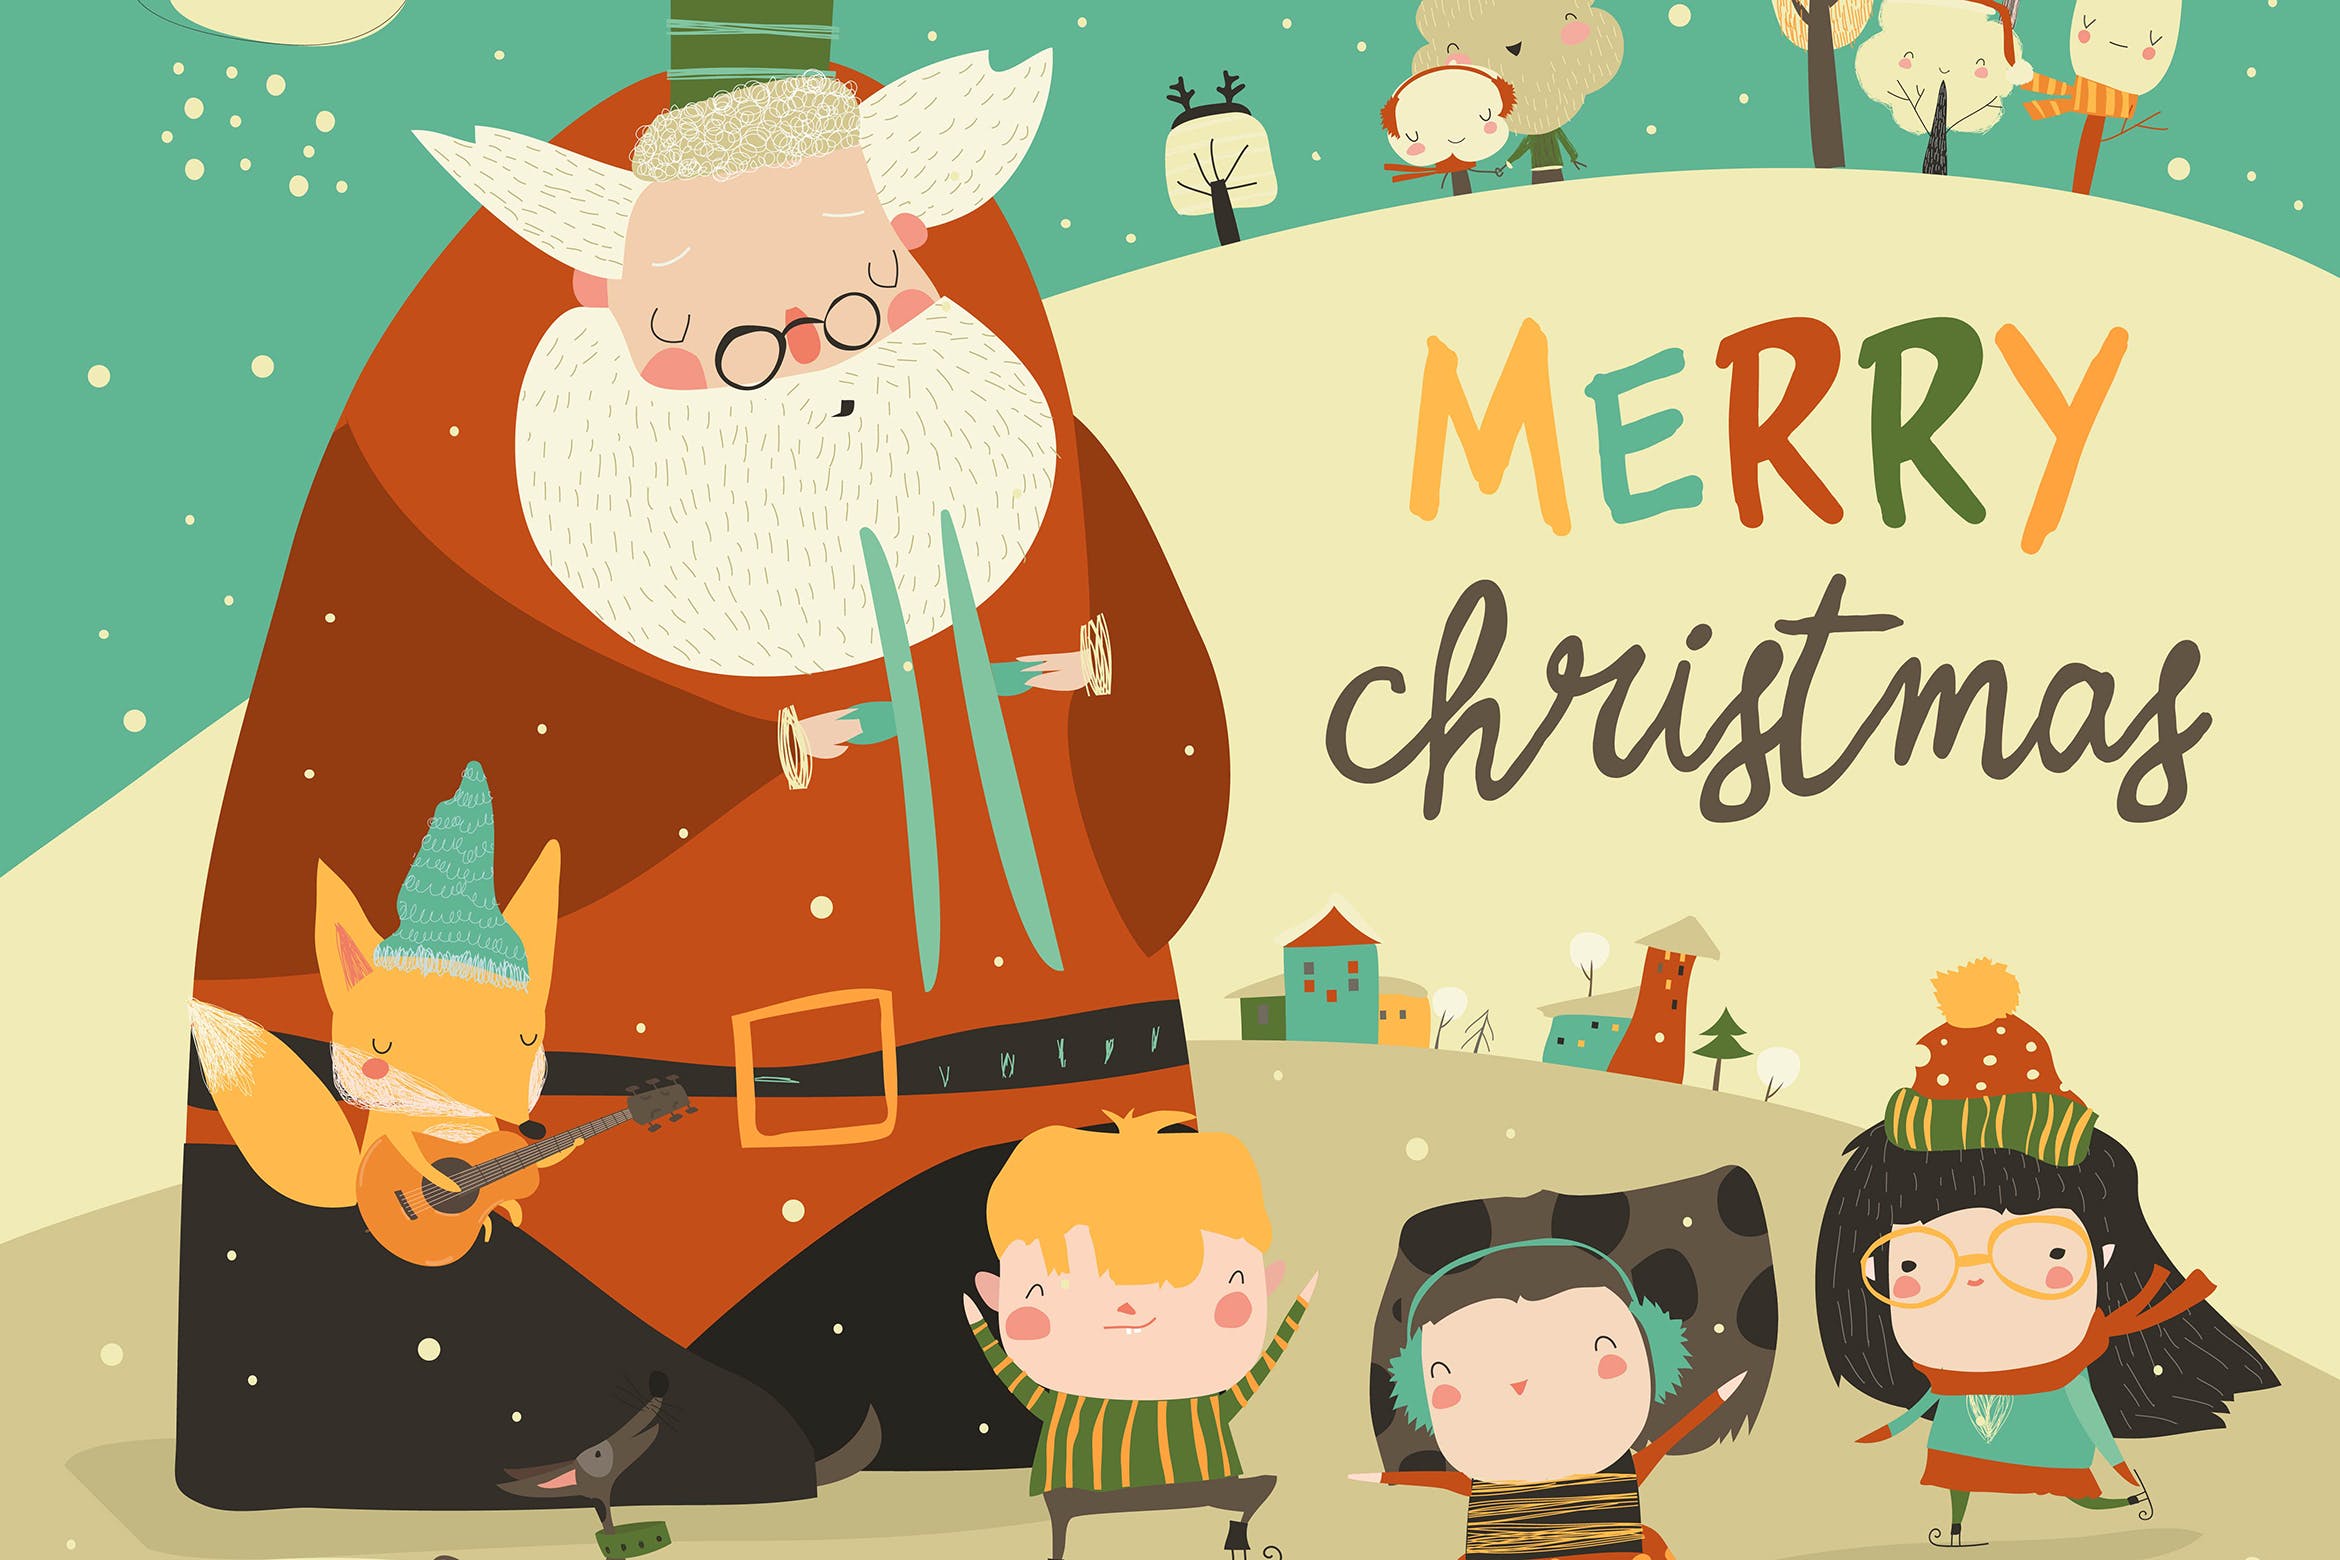 可爱圣诞老人矢量手绘插画设计素材 Funny Santa Claus celebrating Chistmas with cute插图